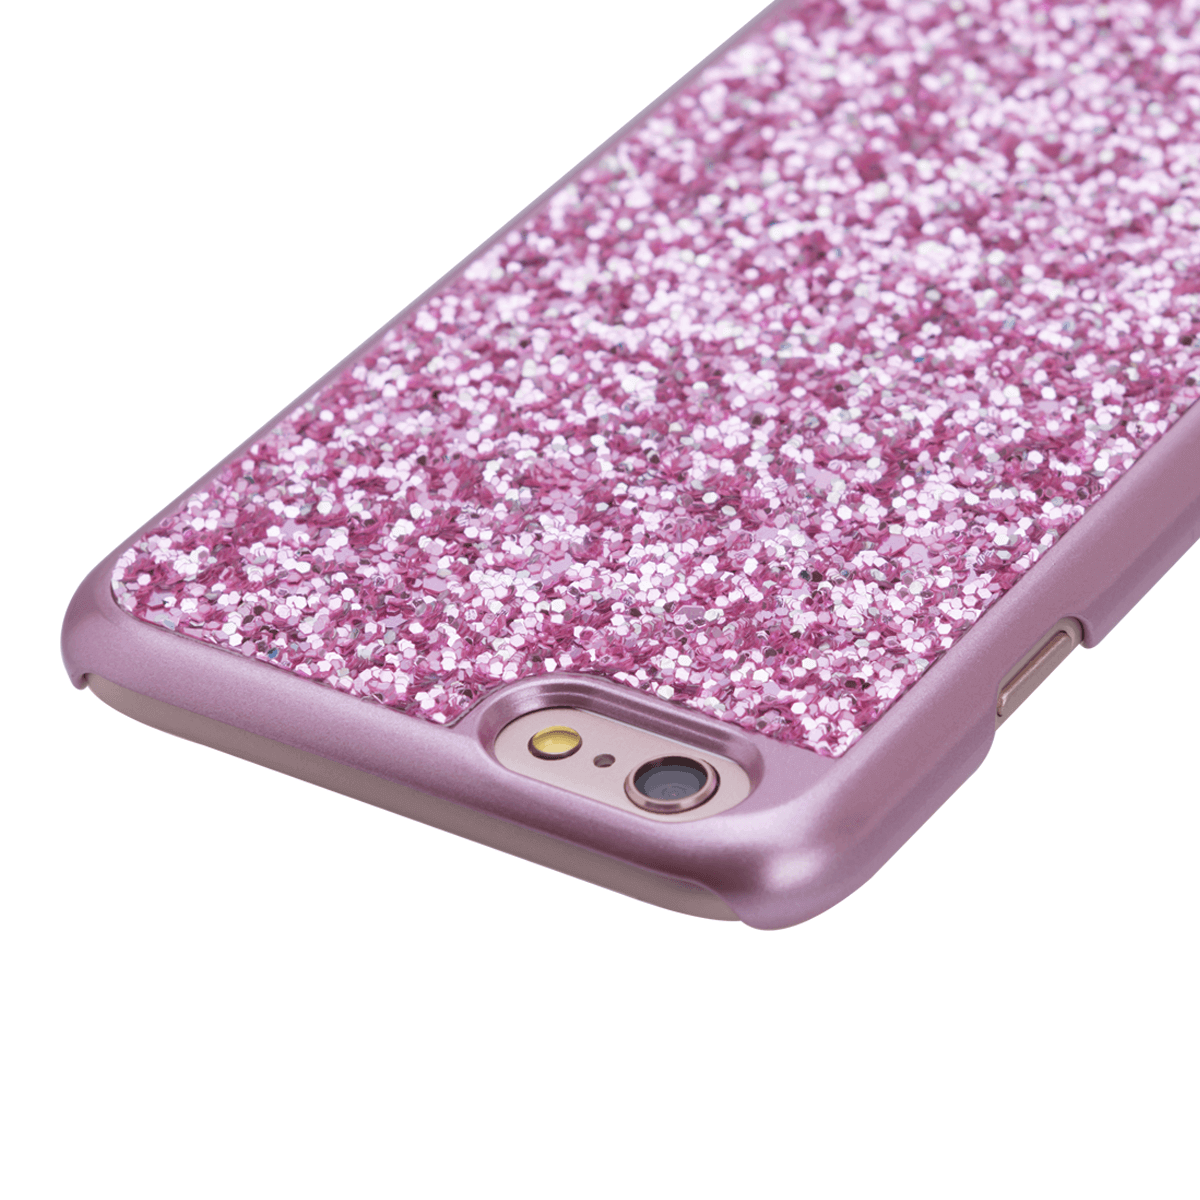 iPhone 6/6S için spada Glitter Rose Gold renk Kapak